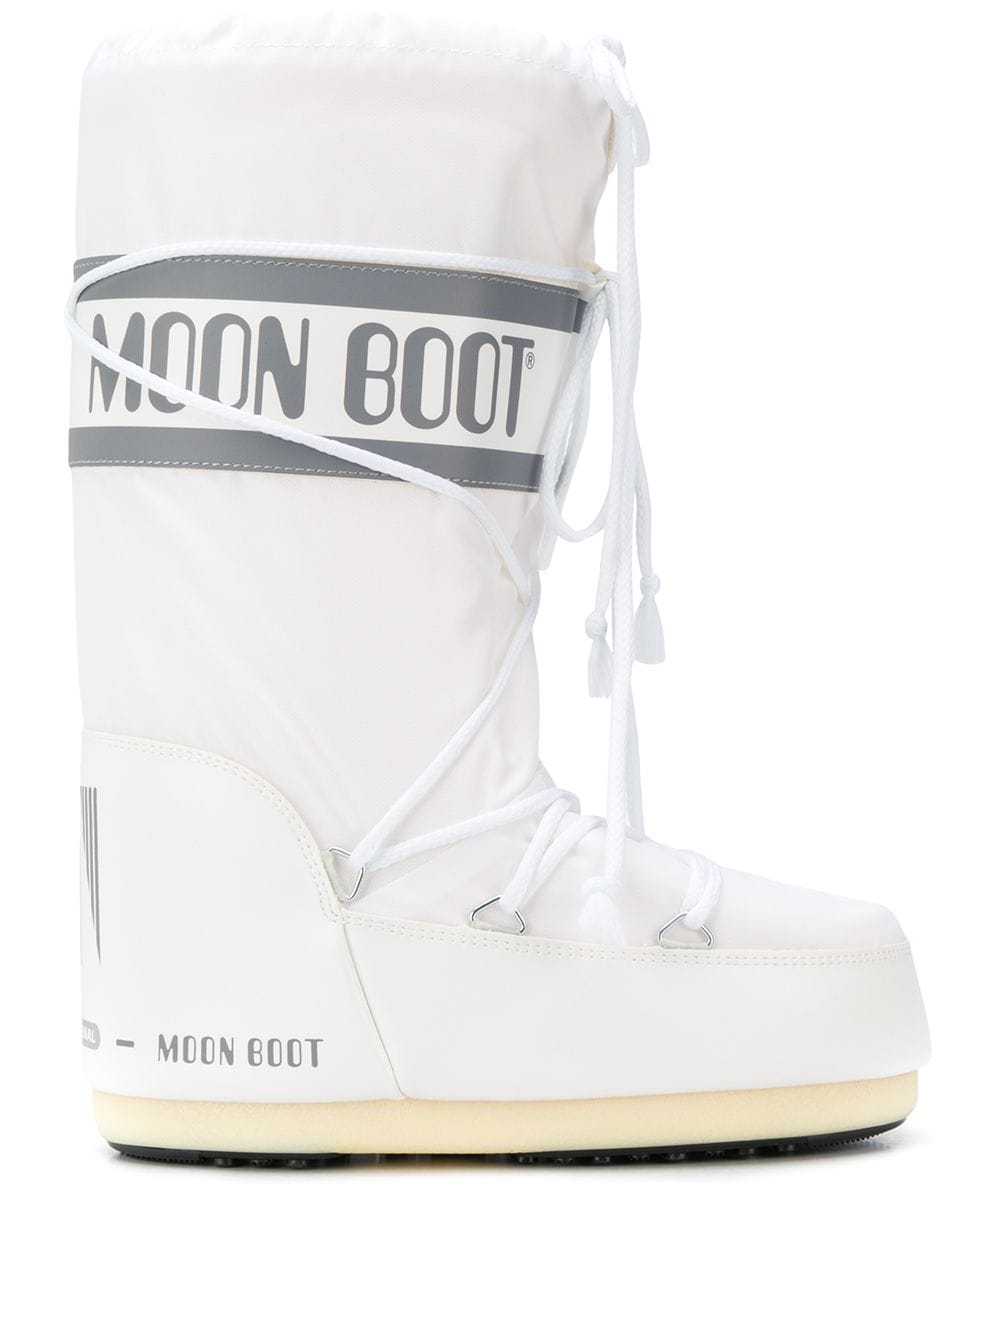 фото Moon boot сапоги со шнурками и логотипом